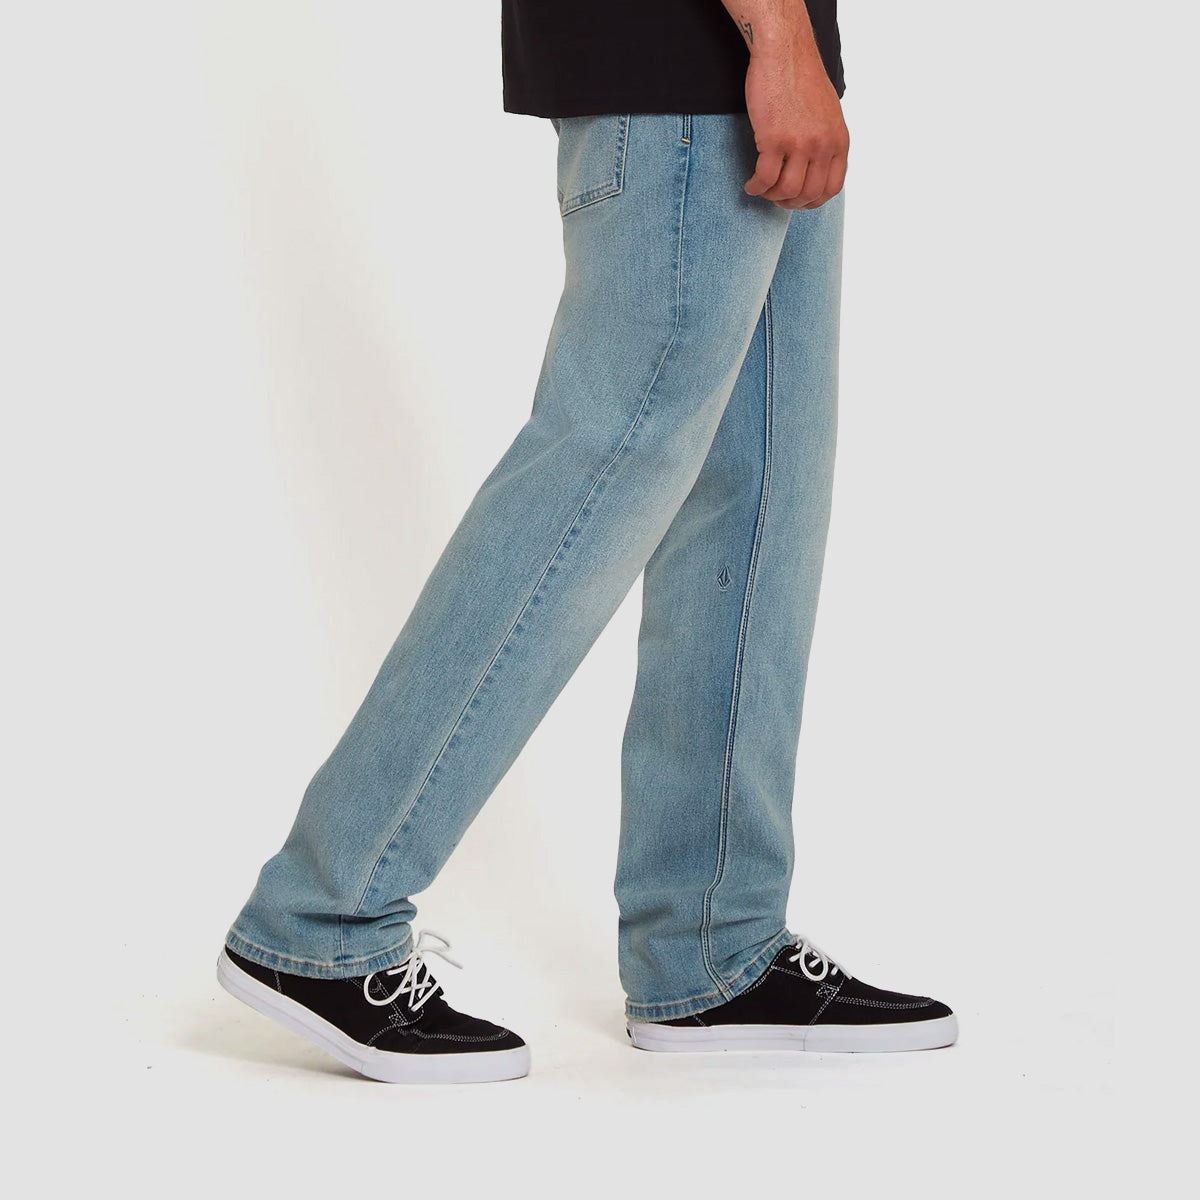 Volcom Solver Modern Straight Fit Jeans Worker Indigo Vintage